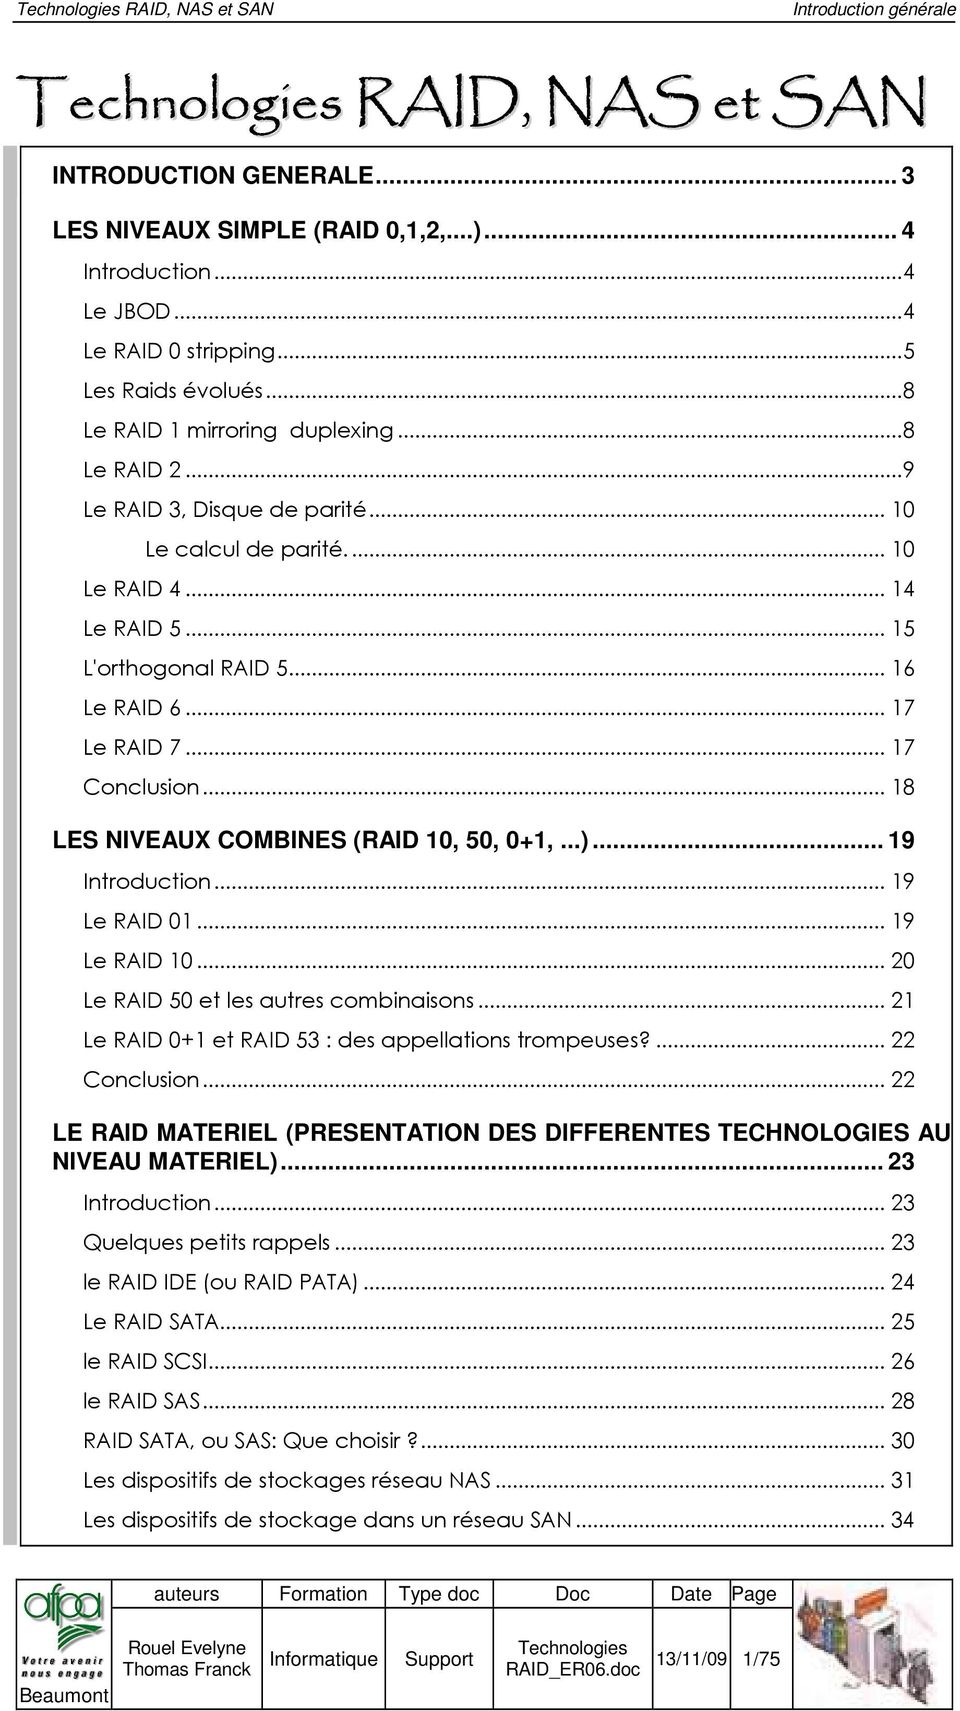 .. 17 Conclusion... 18 LES NIVEAUX COMBINES (RAID 10, 50, 0+1,...)... 19 Introduction... 19 Le RAID 01... 19 Le RAID 10... 20 Le RAID 50 et les autres combinaisons.